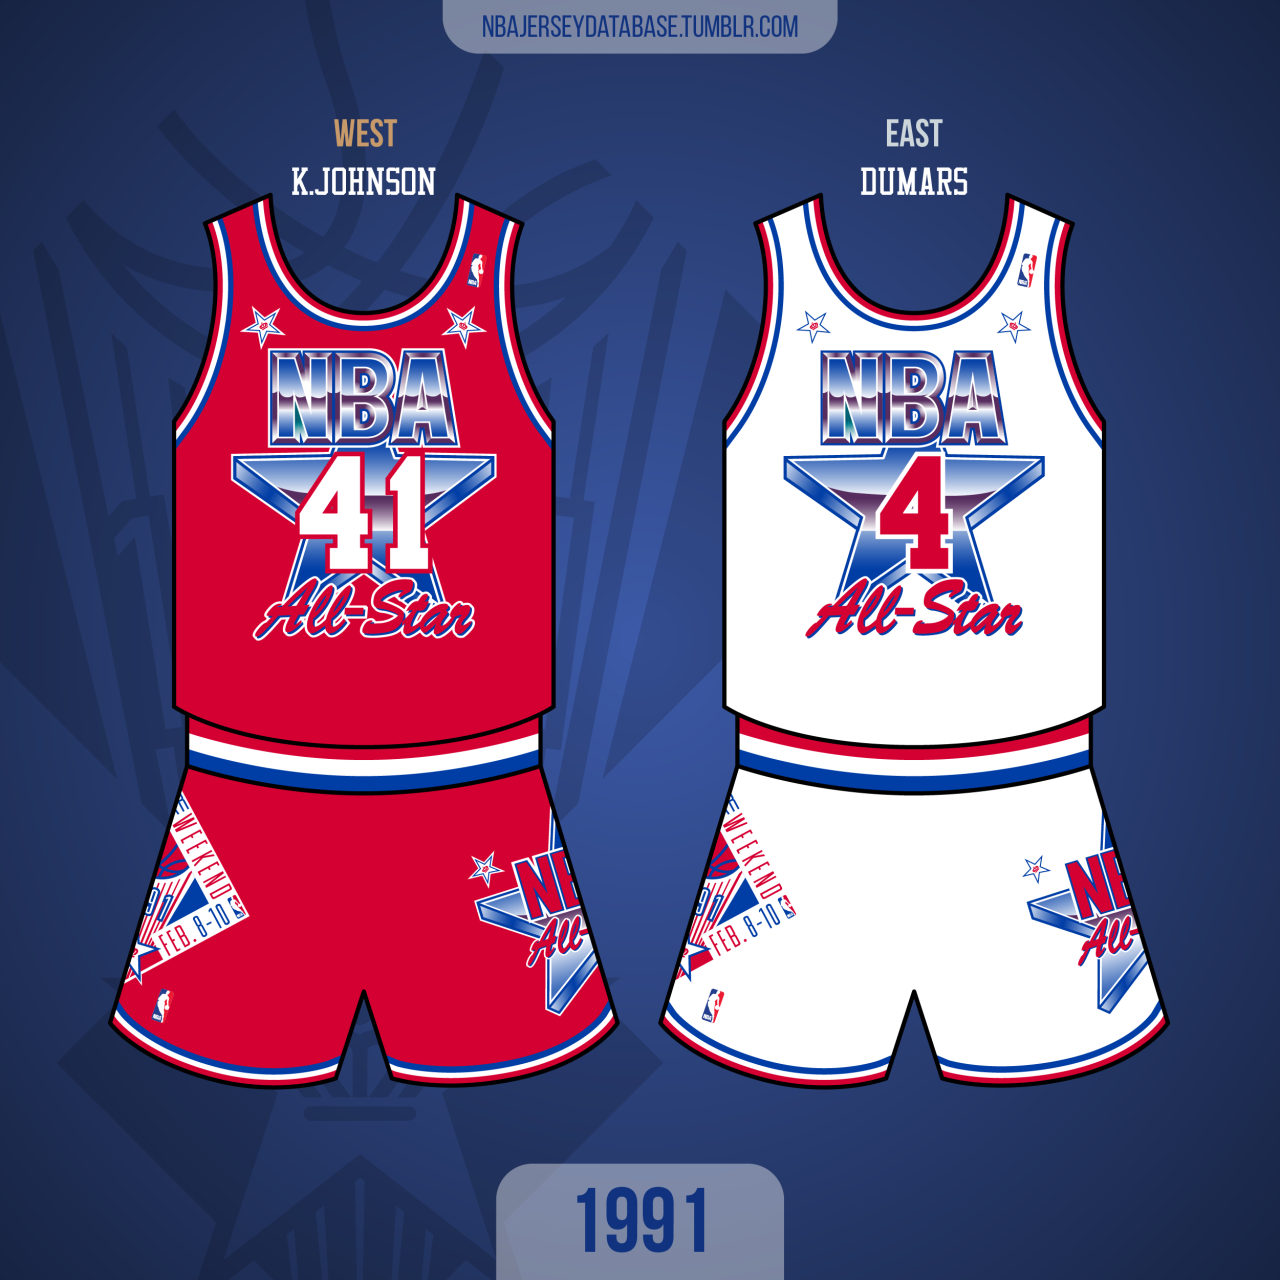 Champion 90s NBA 🏀 KNICKS HOUSTON basket jersey , 555 SOUL 90s